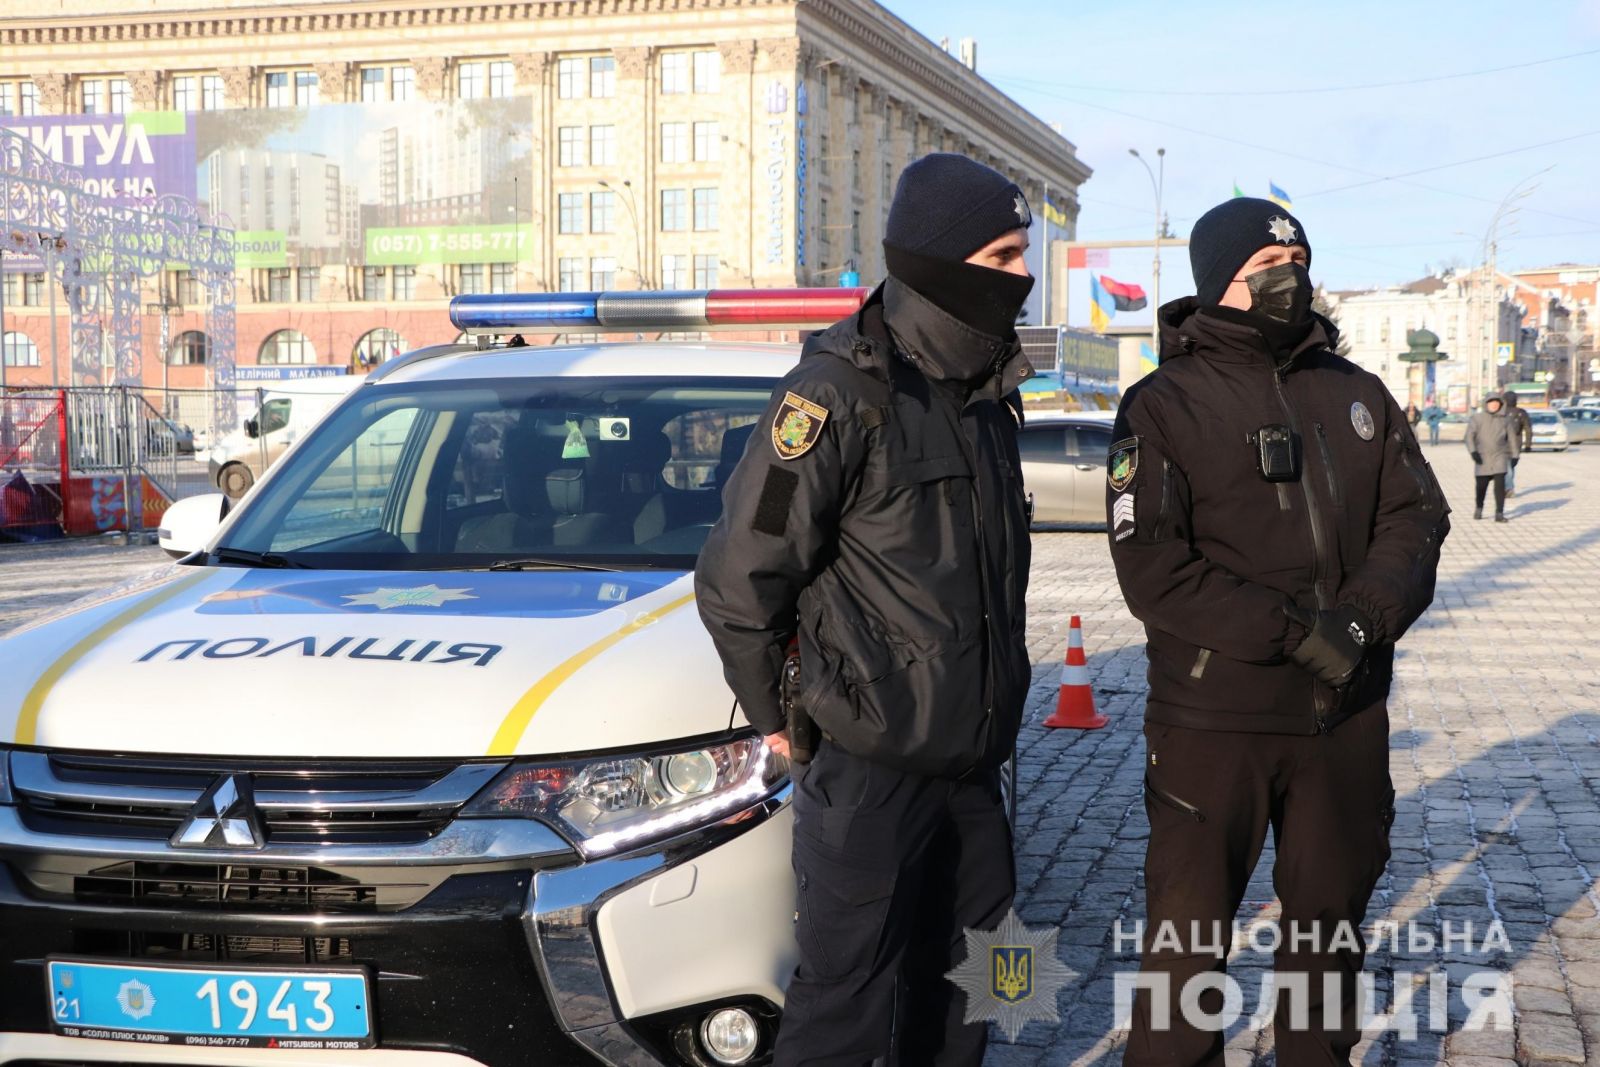 Новый год в Харькове: Гулянья пройдут под охраной 2 530 силовиков